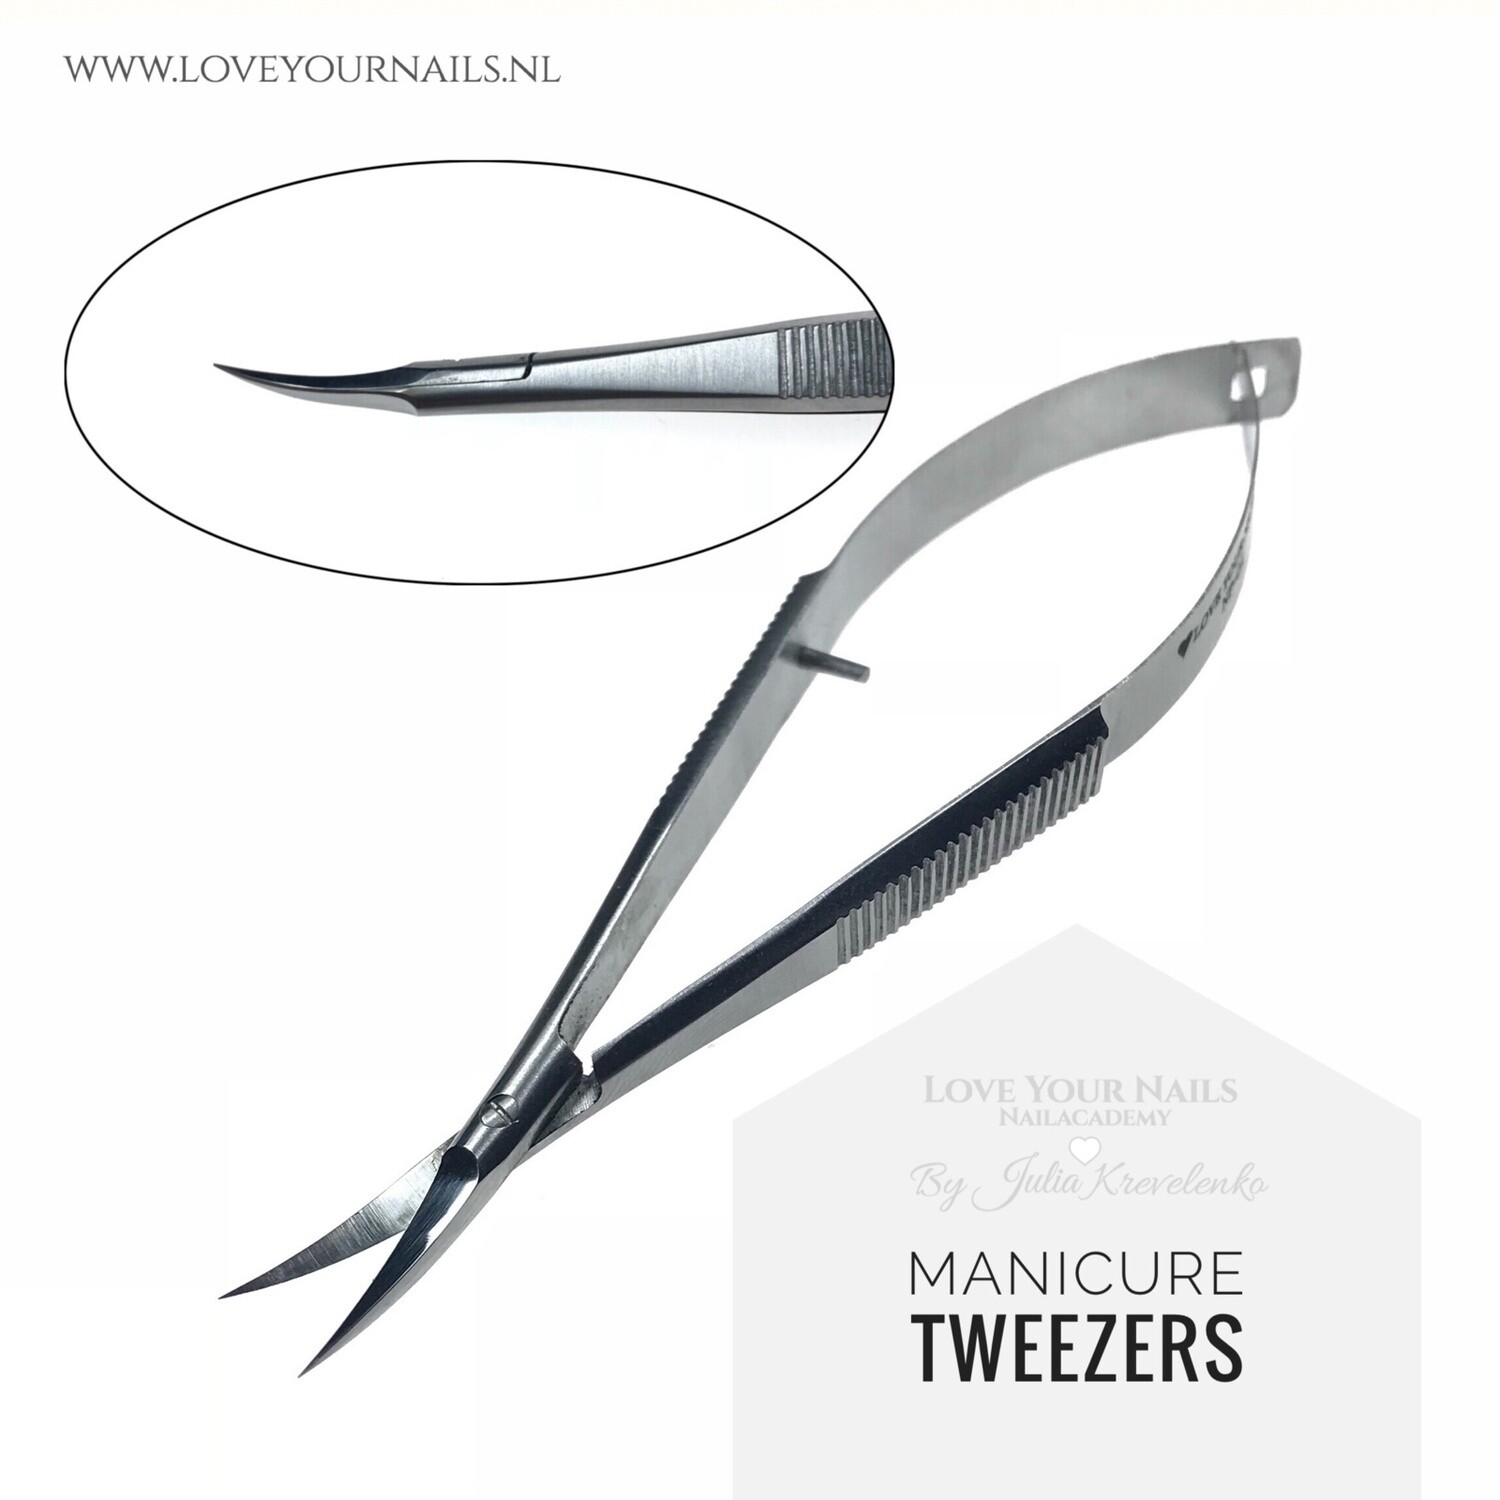 Manicure tweezers NP-03 MUST HAVE